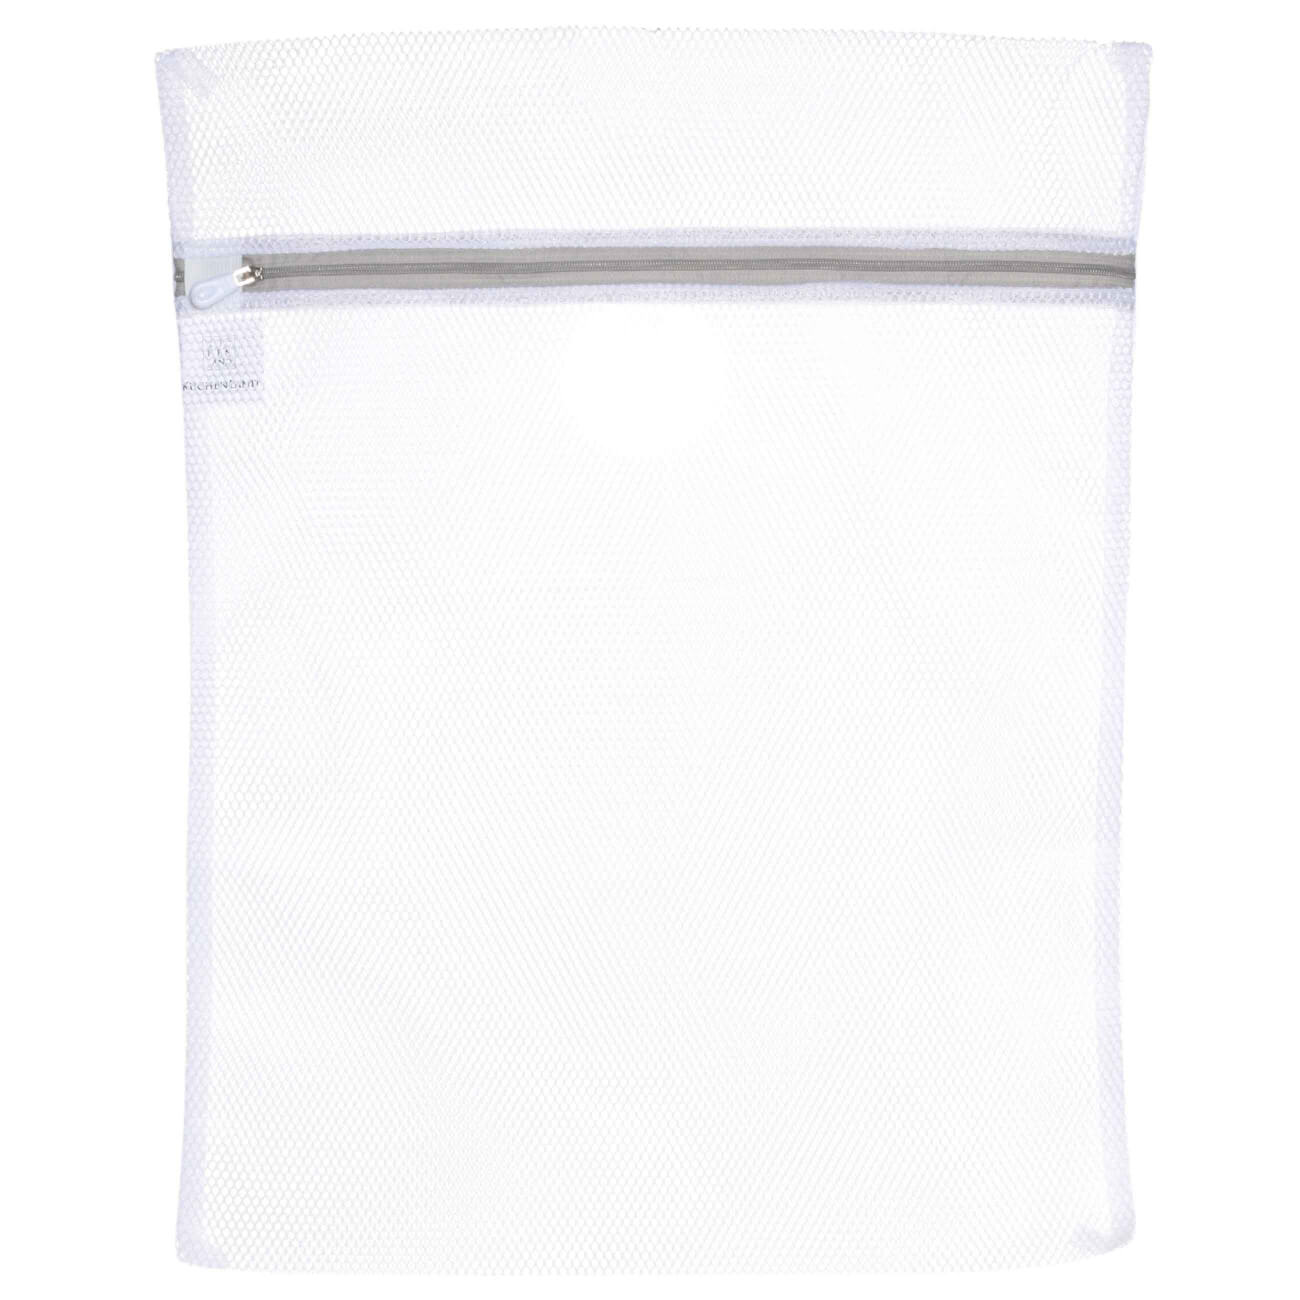 Мешок для стирки одежды, 40х50 см, полиэстер, бело-серый, Safety мешок для стирки бюстгалтеров 15 см с защитой полиэстер safety